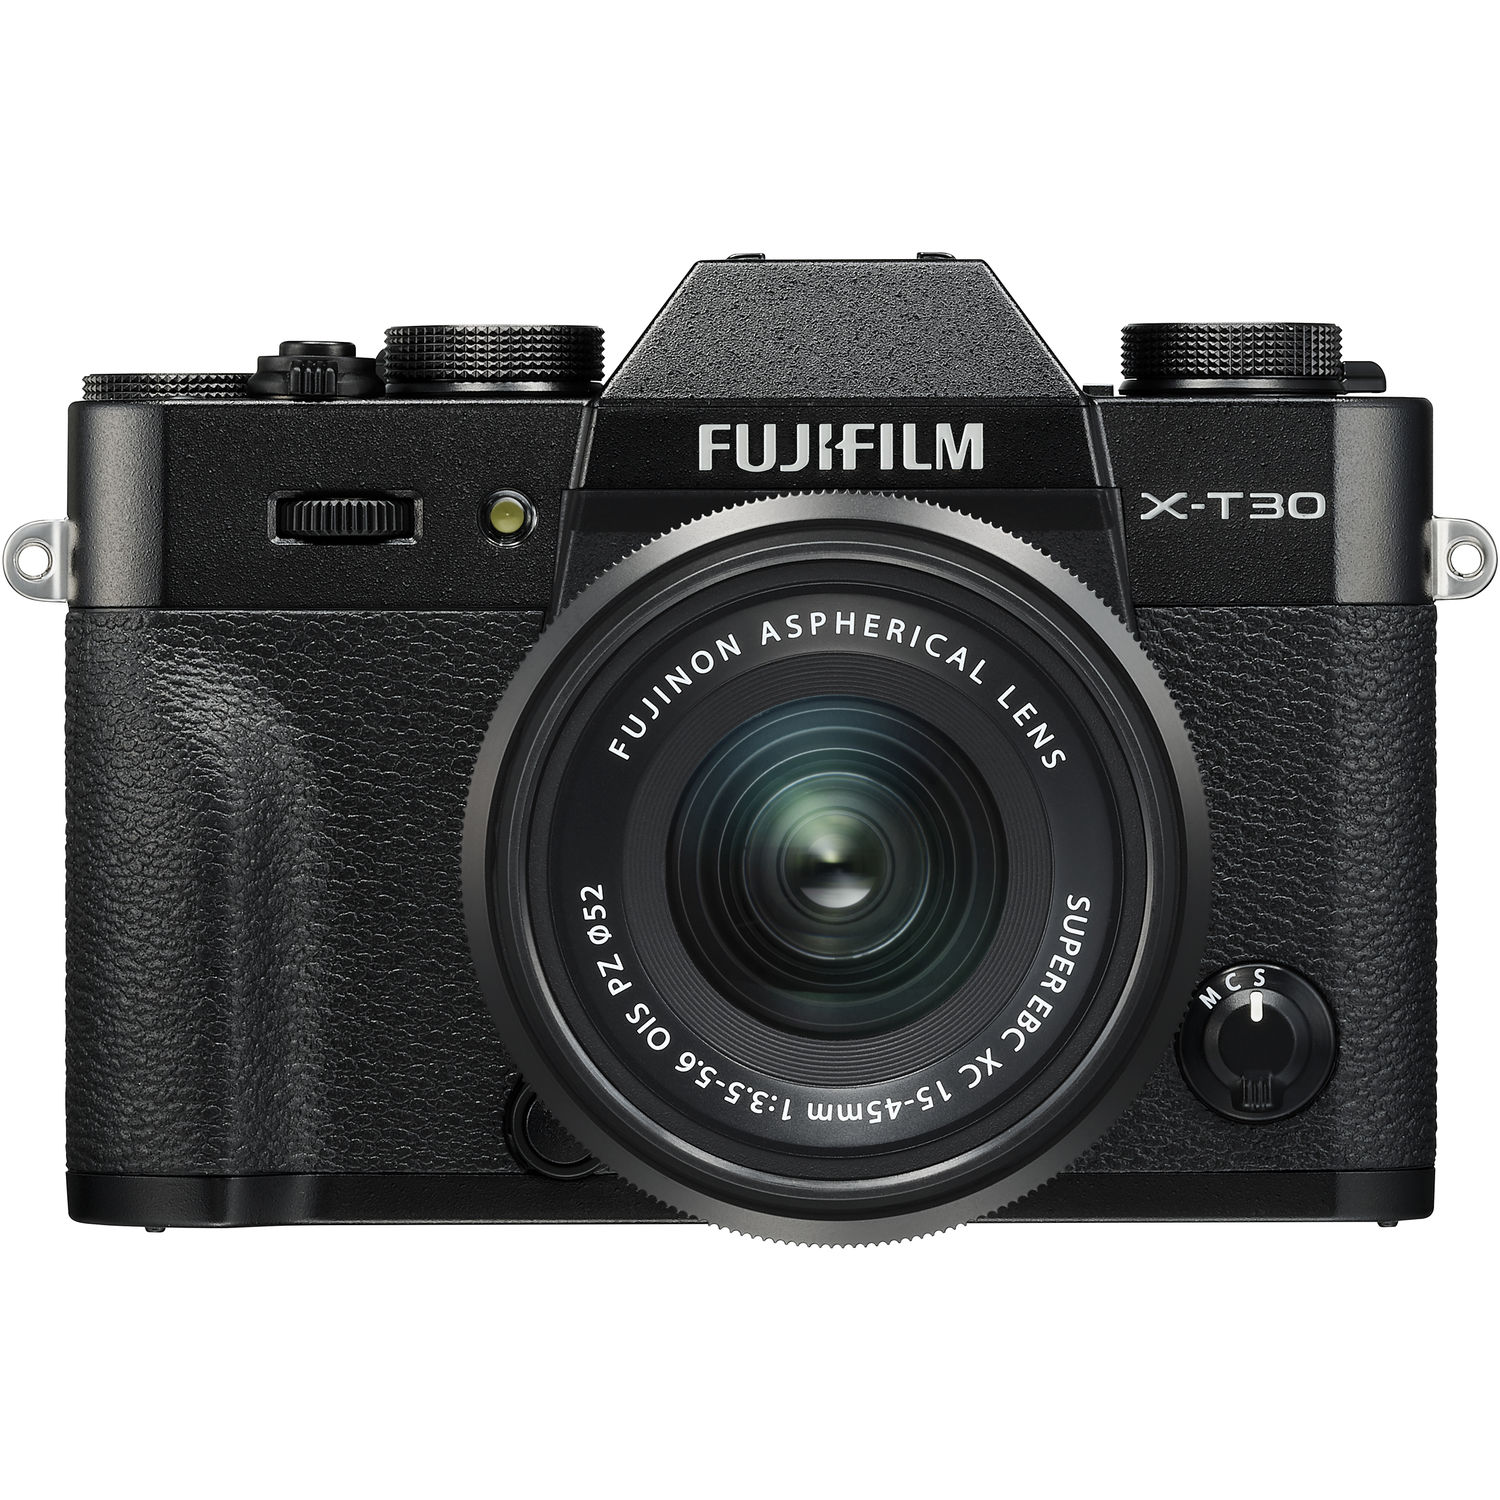 Fujifilm X-T30 Mirrorless Digital Camera with 15-45mm F3.5-5.6 OIS PZ Lens (Black)